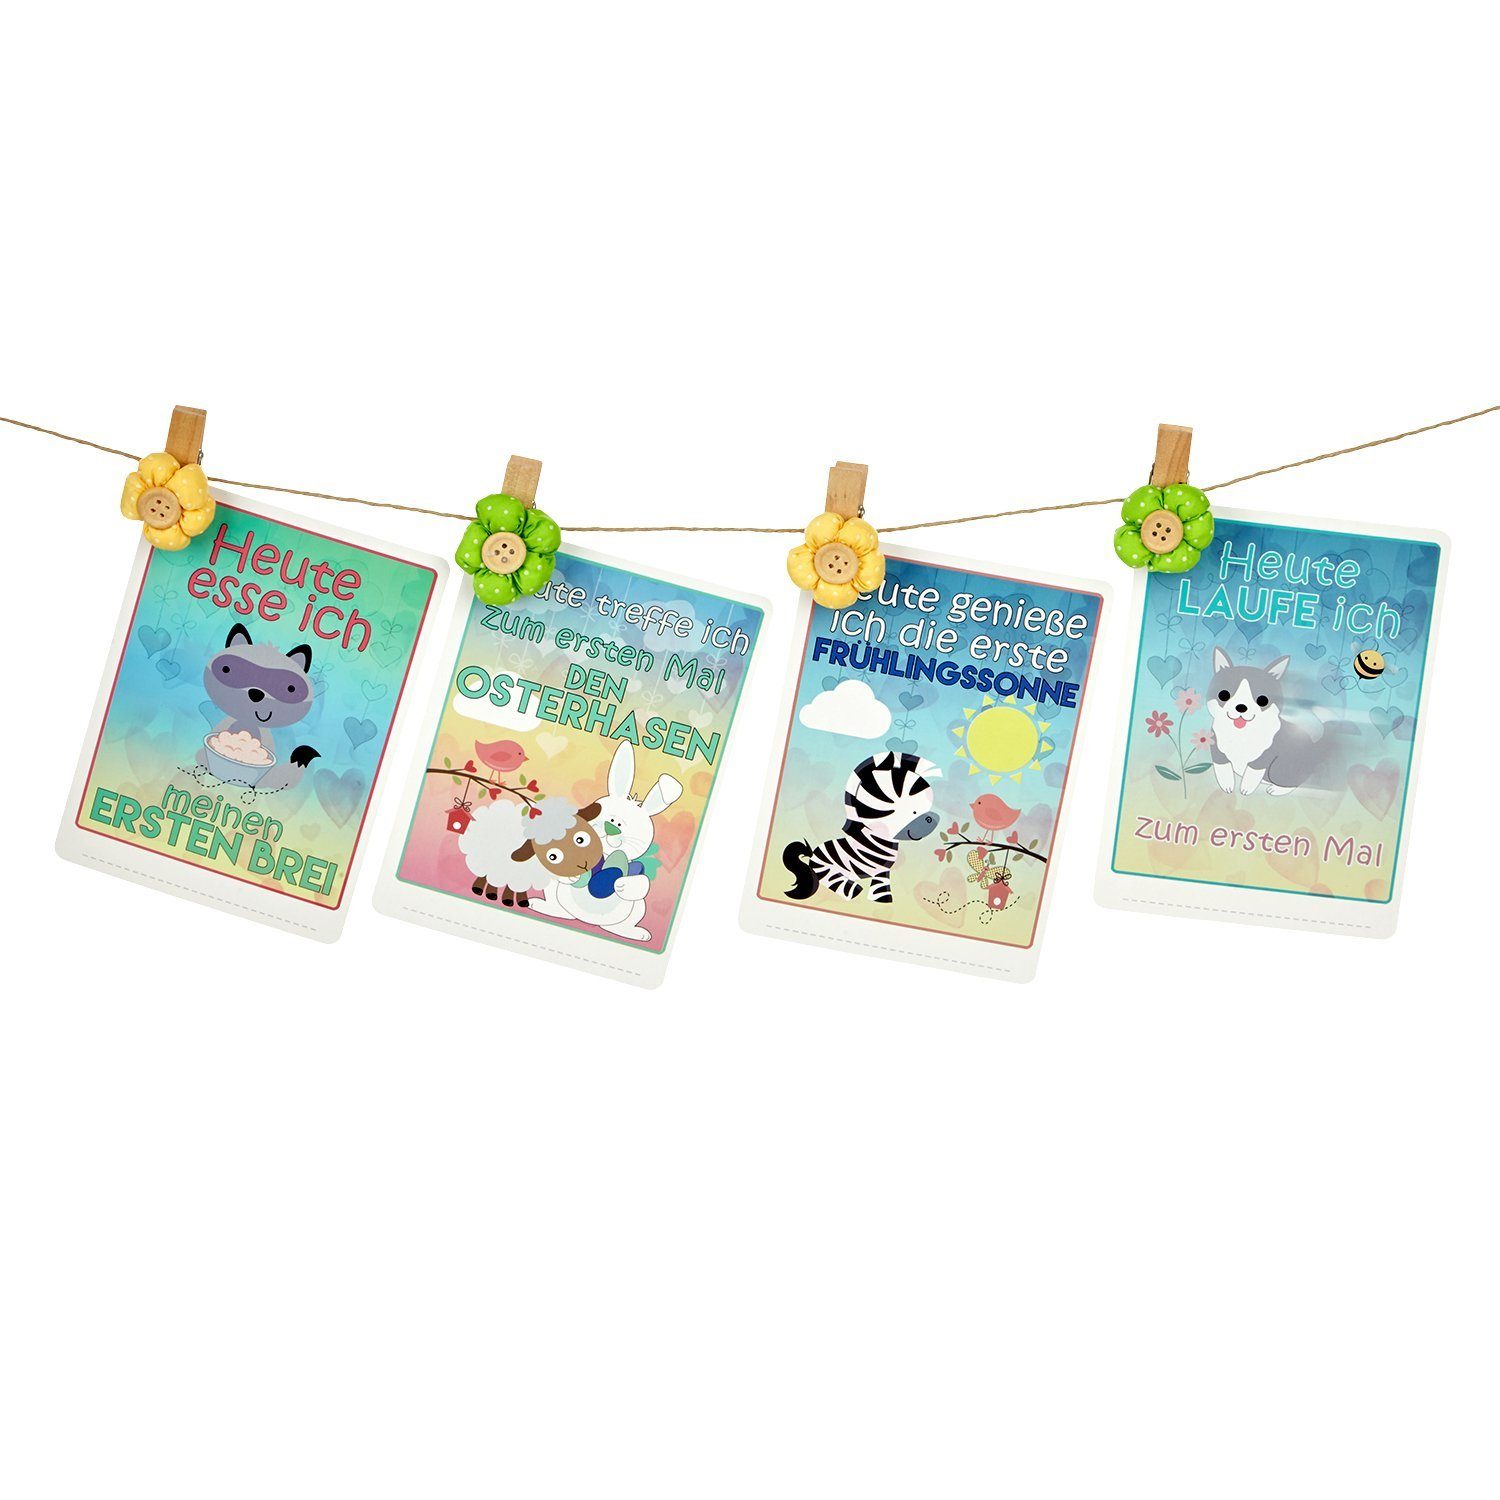 Cards Baby Cards Zeichenalbum Erinnerungskarten Memory x Talinu 35 erstes Lebensjahr